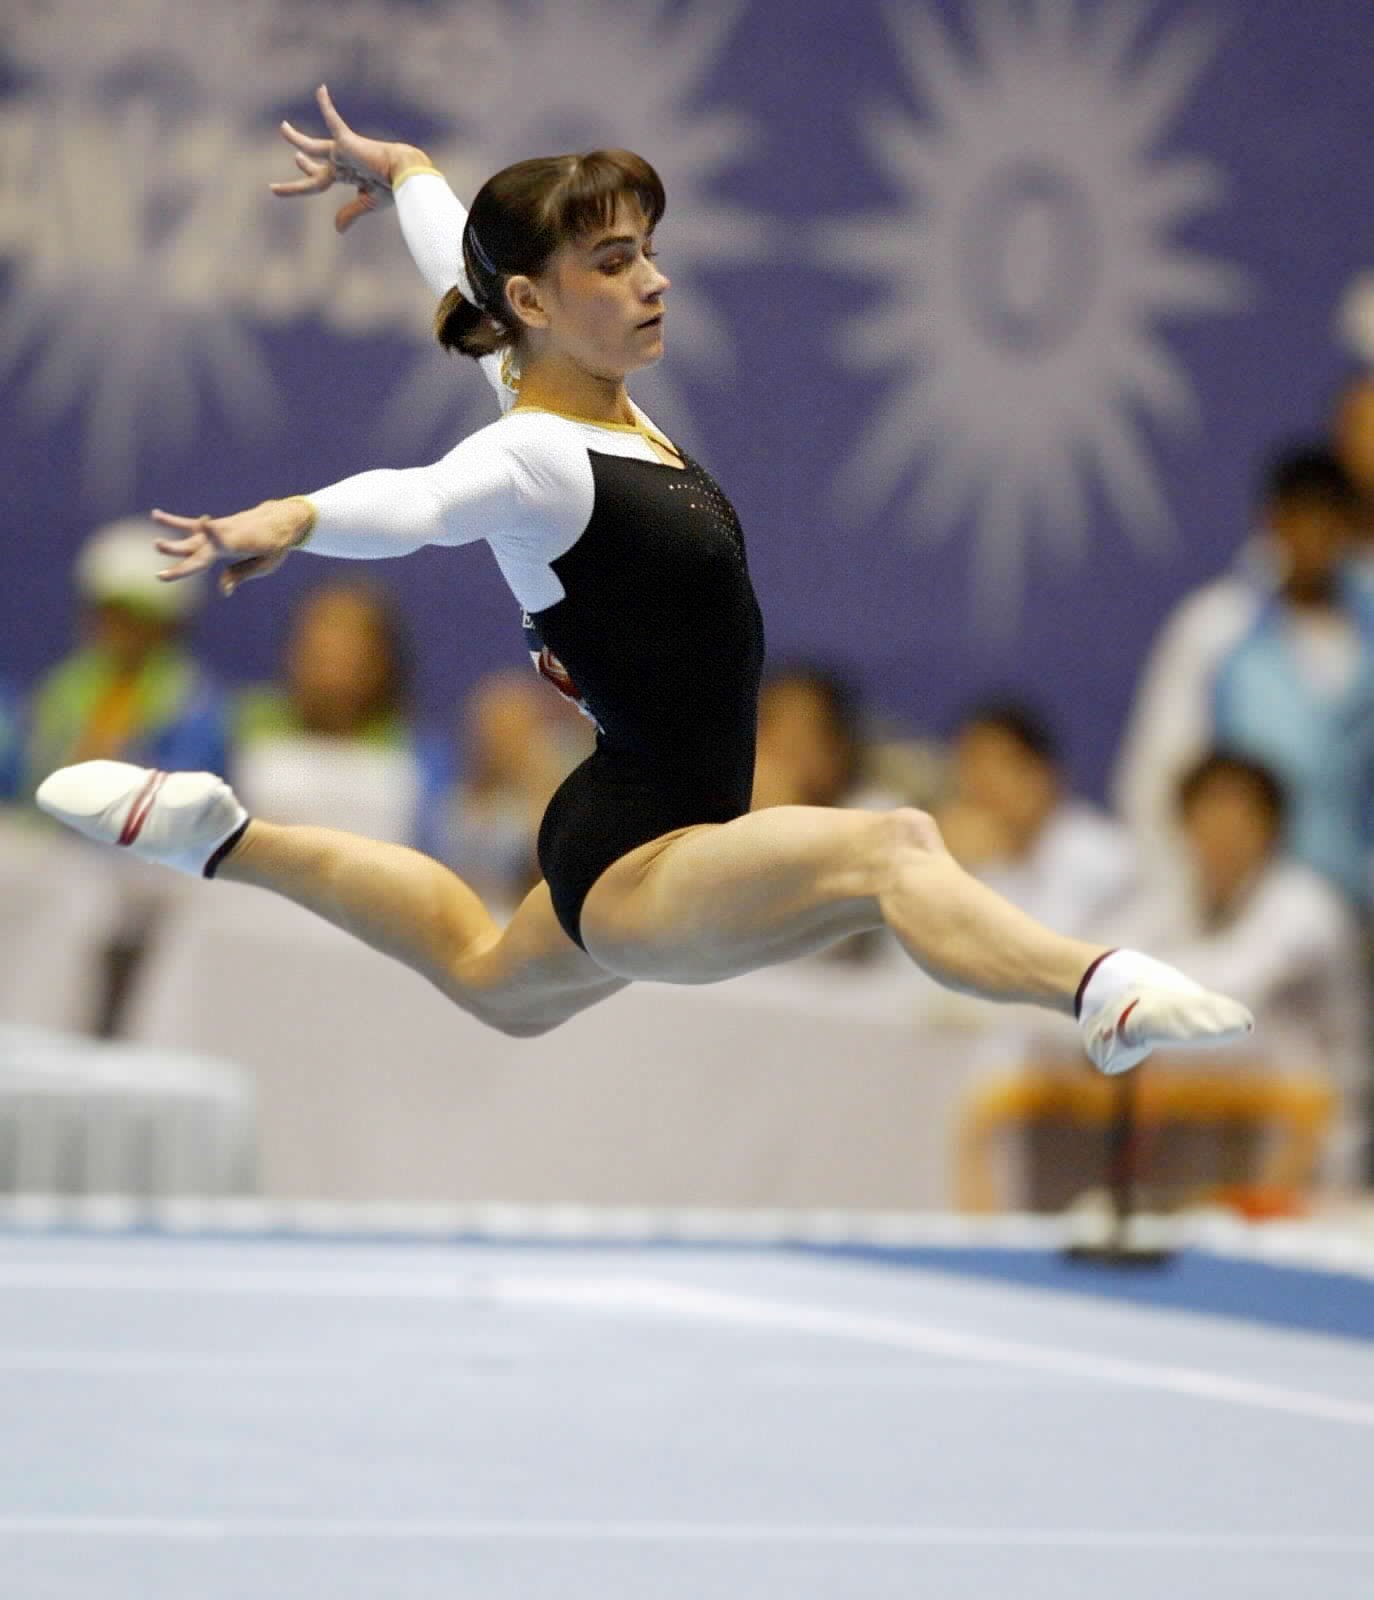 2002年10月5日，丘索维金娜在釜山亚运会女子自由体操决赛中。